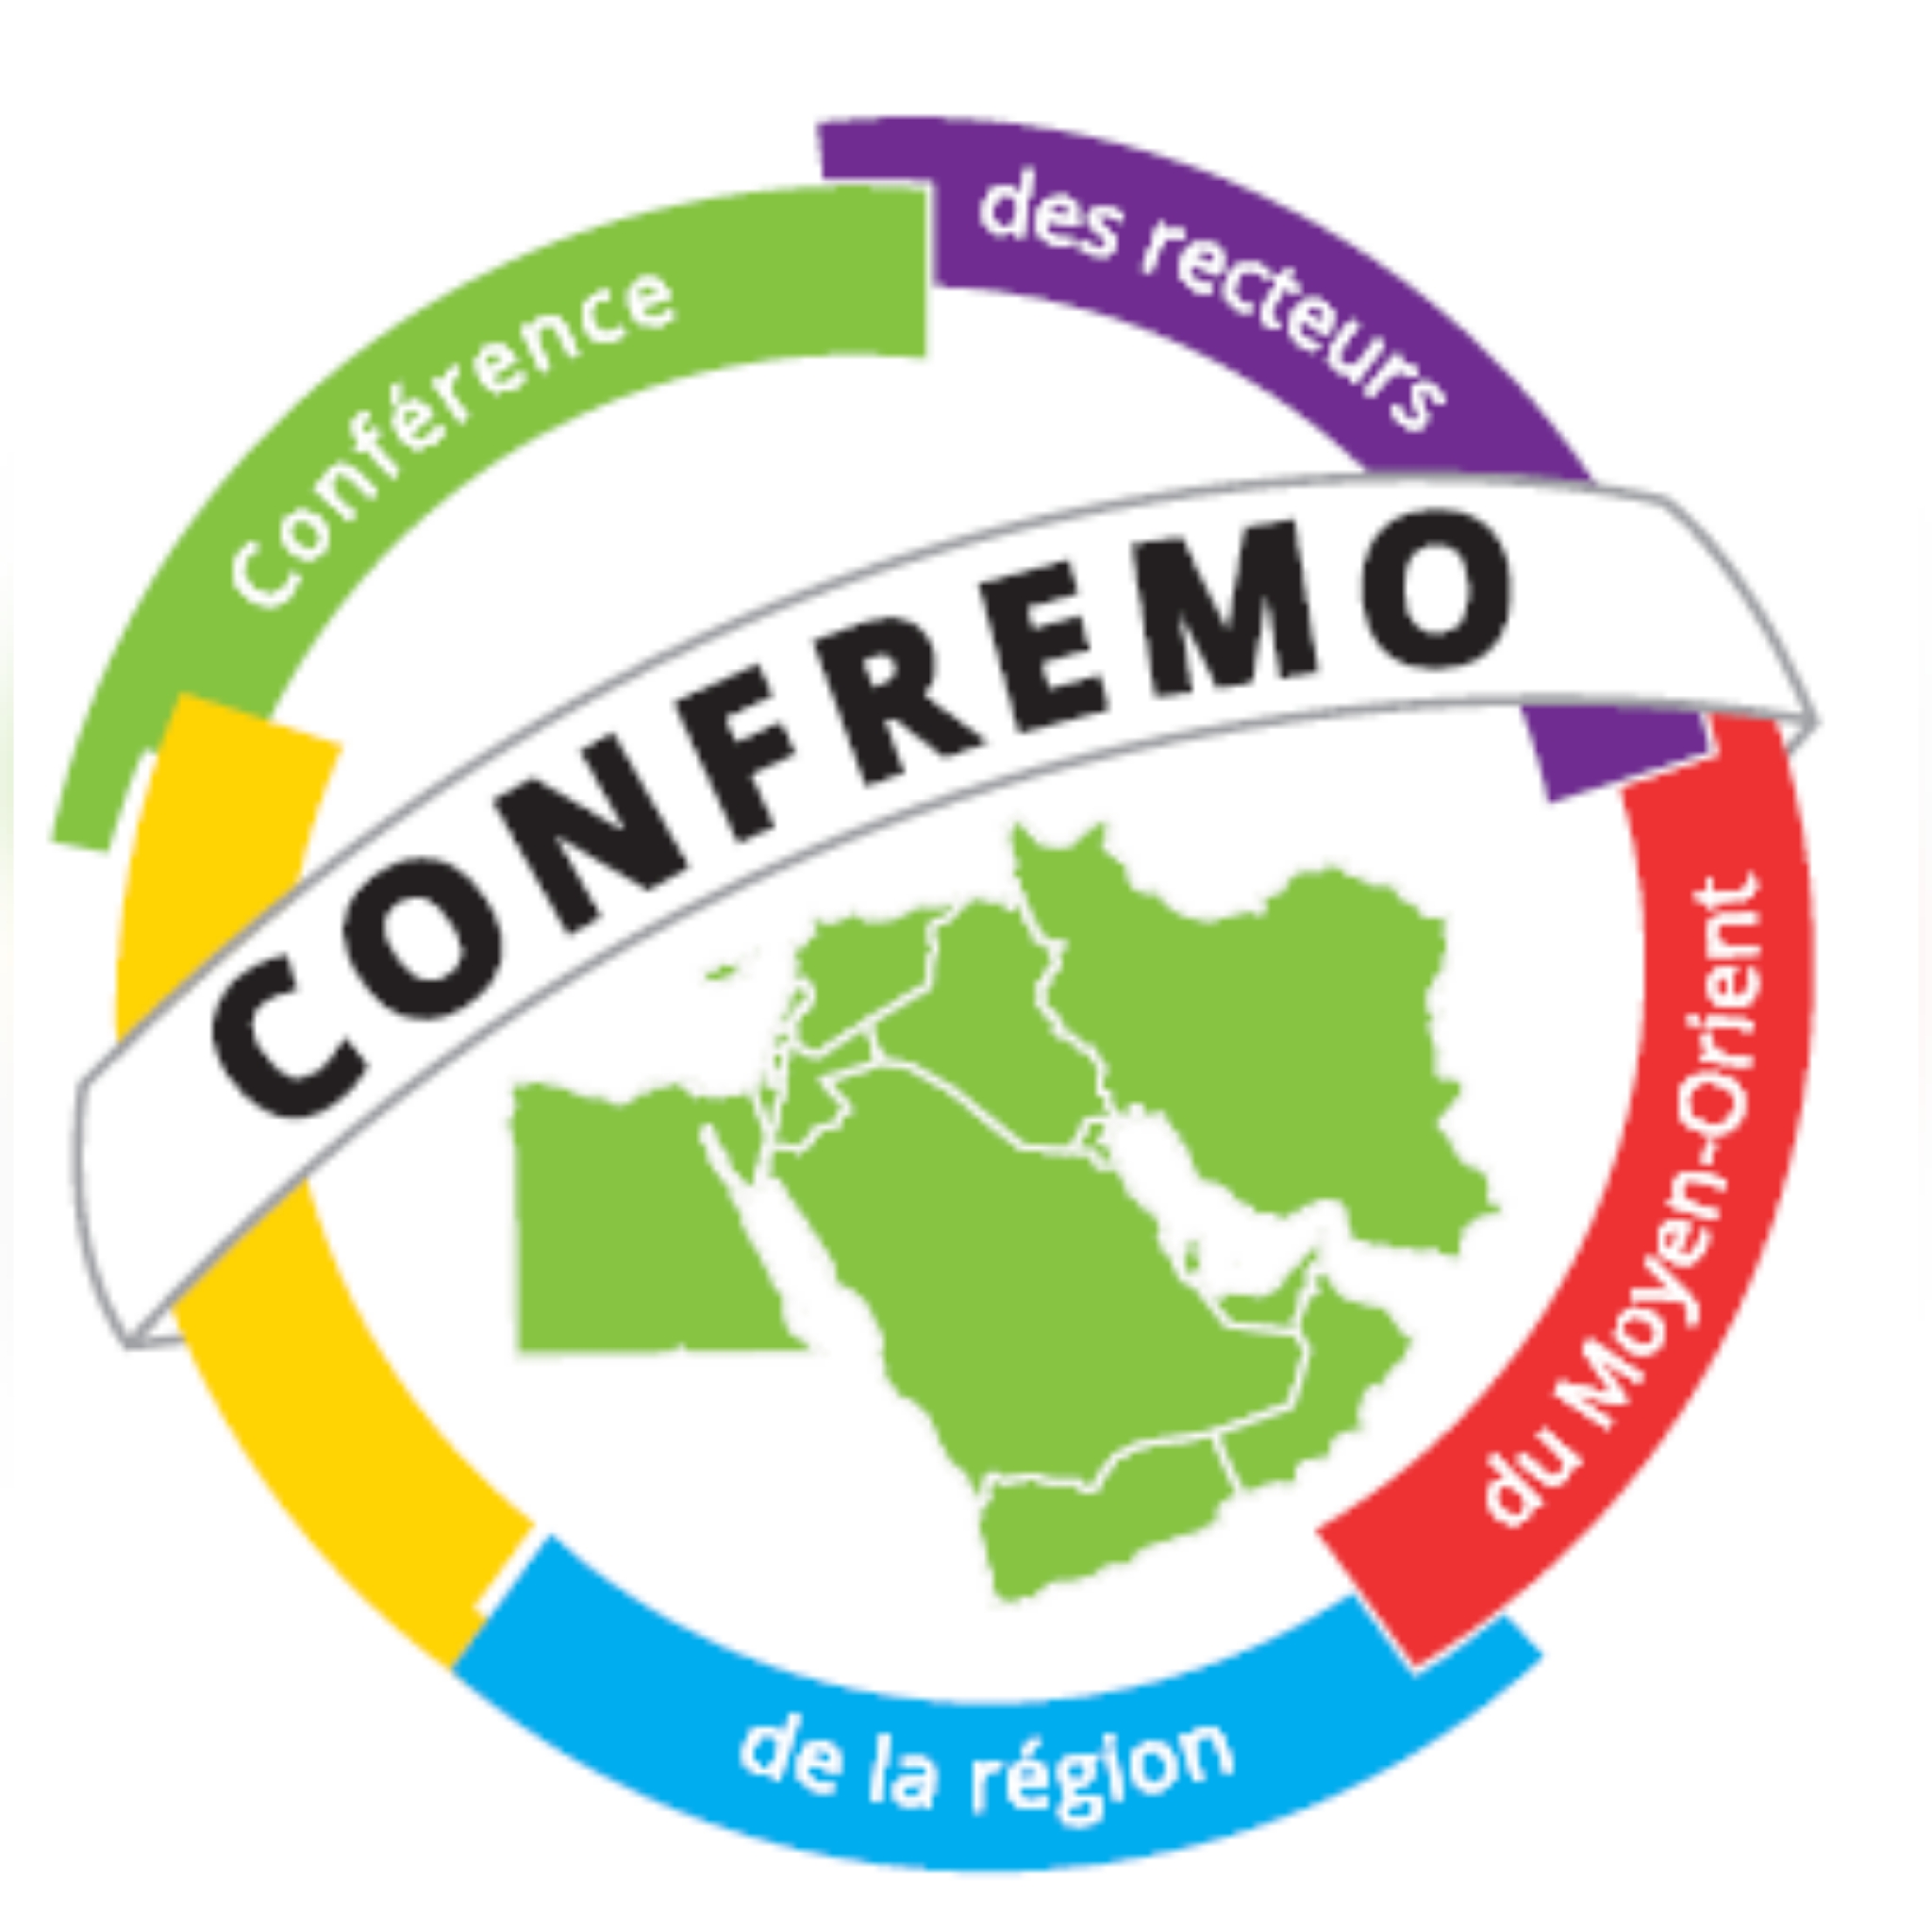 دعوة للتقدم: أعضاء خبراء في اللجان المواضيعية لمؤتمر CONFREMO